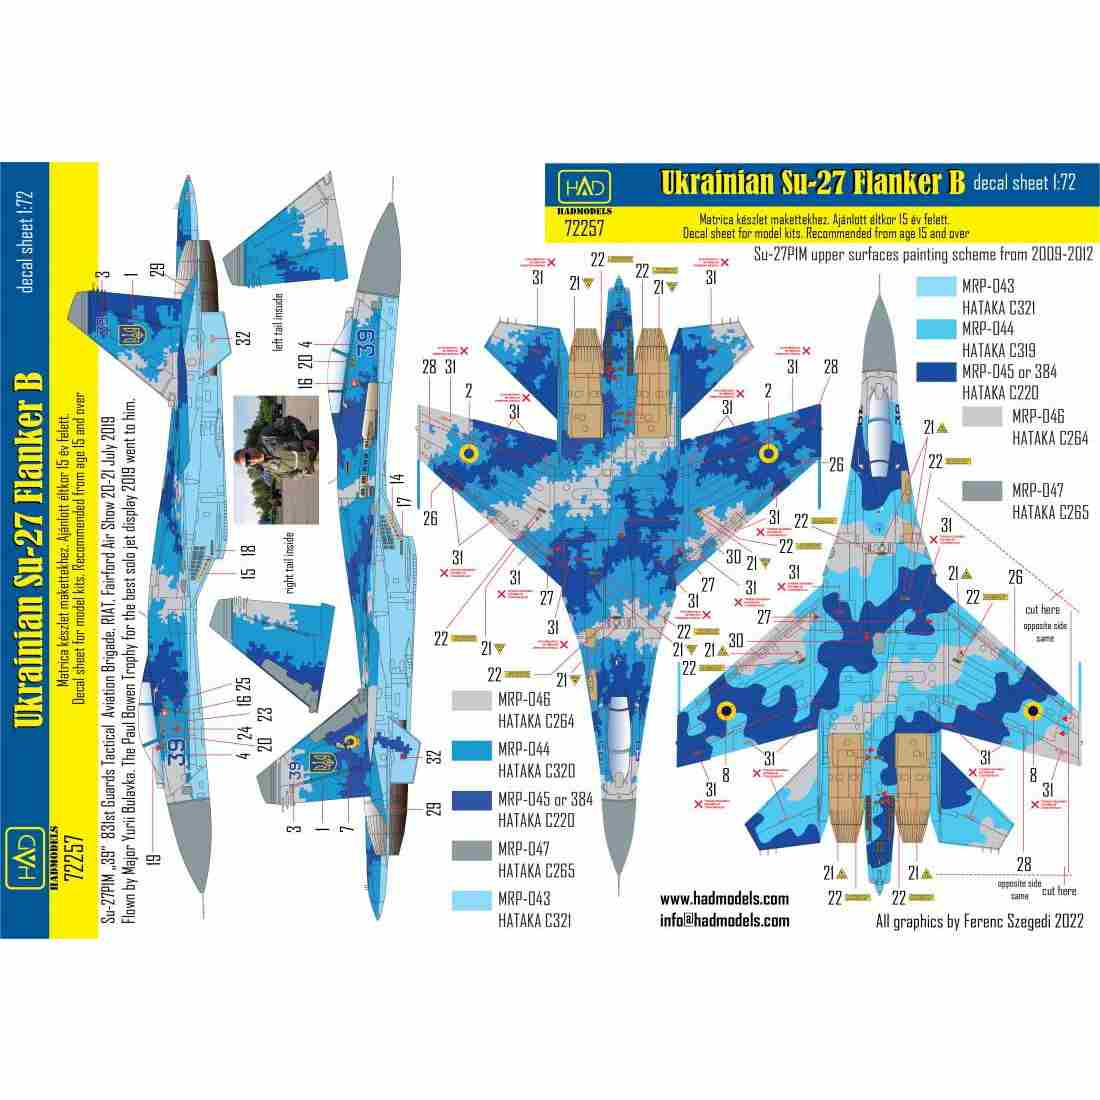 【新製品】72257 スホーイ Su-27P1M フランカーB ｢ウクライナ｣デカール